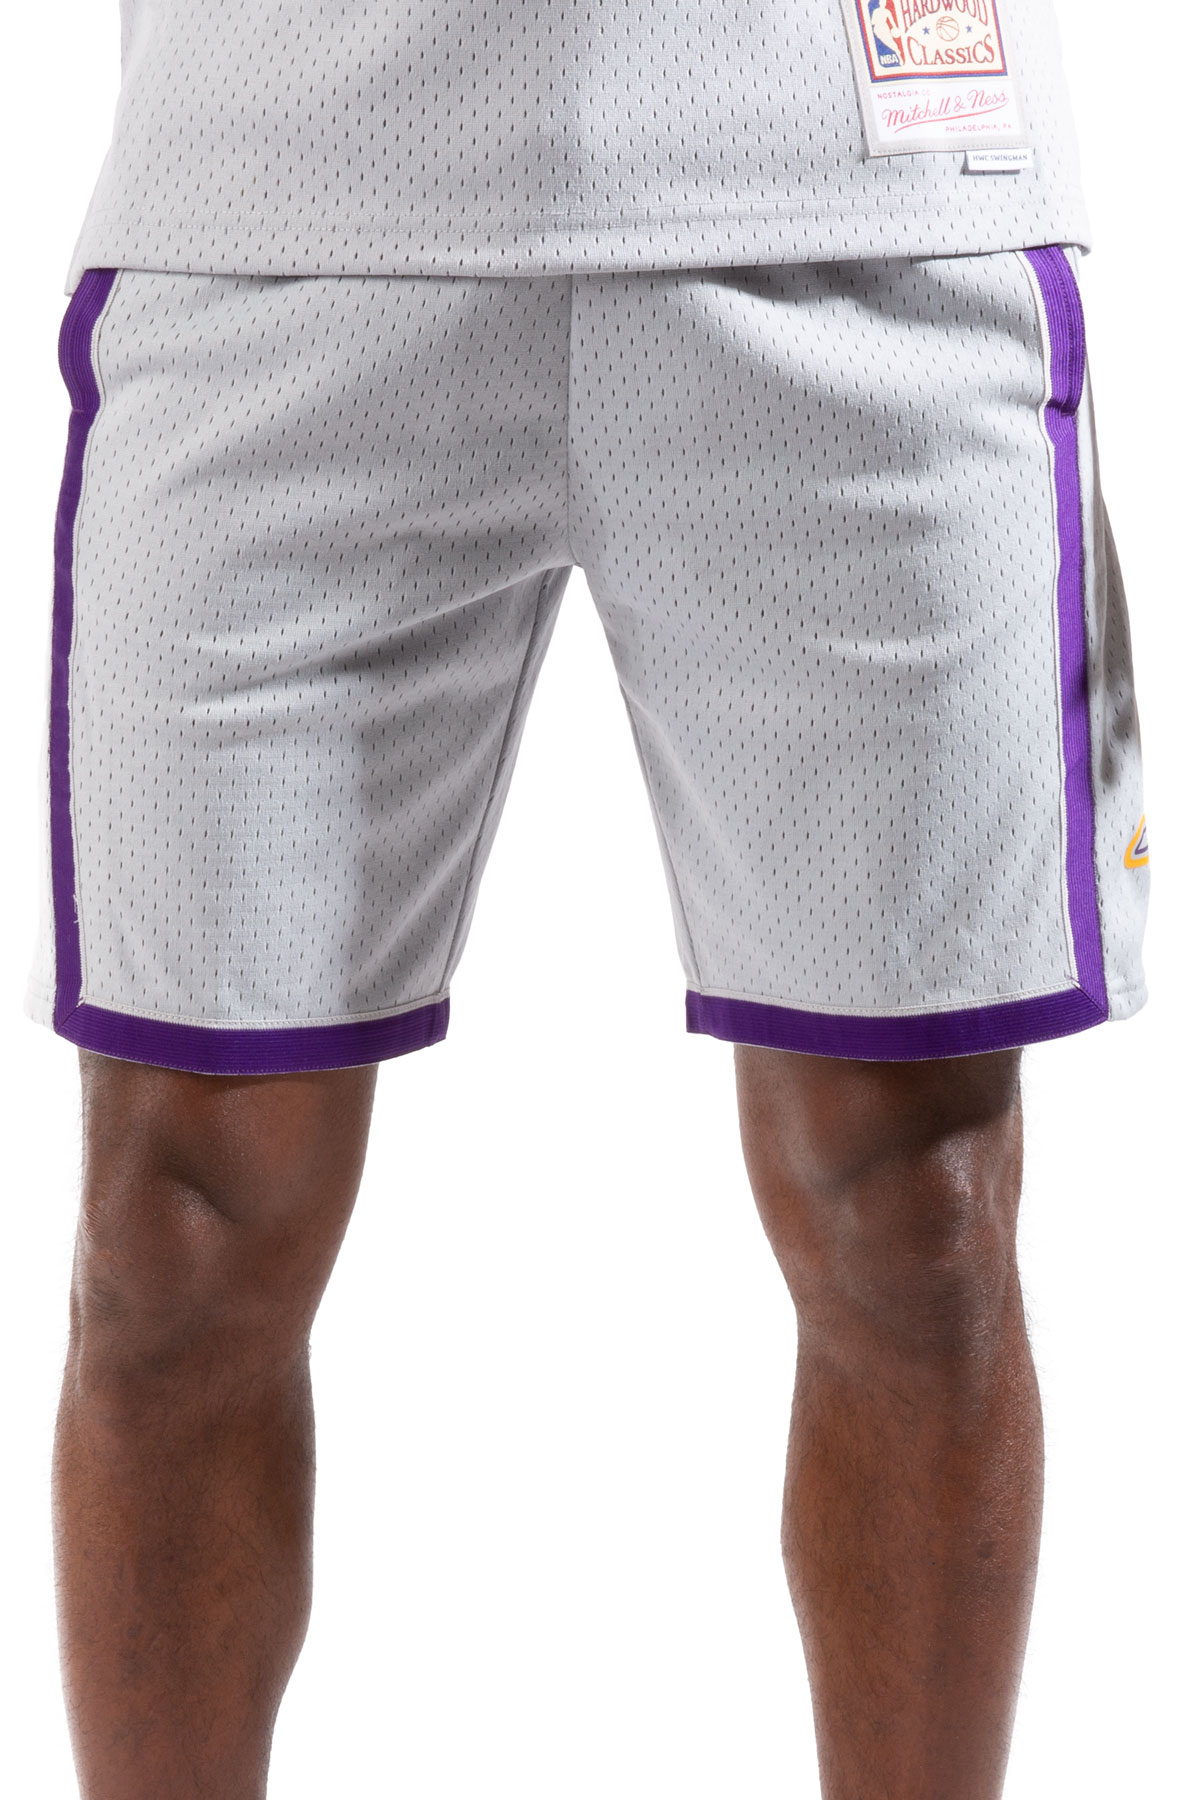 Mitchell & Ness LA Lakers Re-Take NBA Swingman Basketball Shorts Gradient  Men's Sz XL